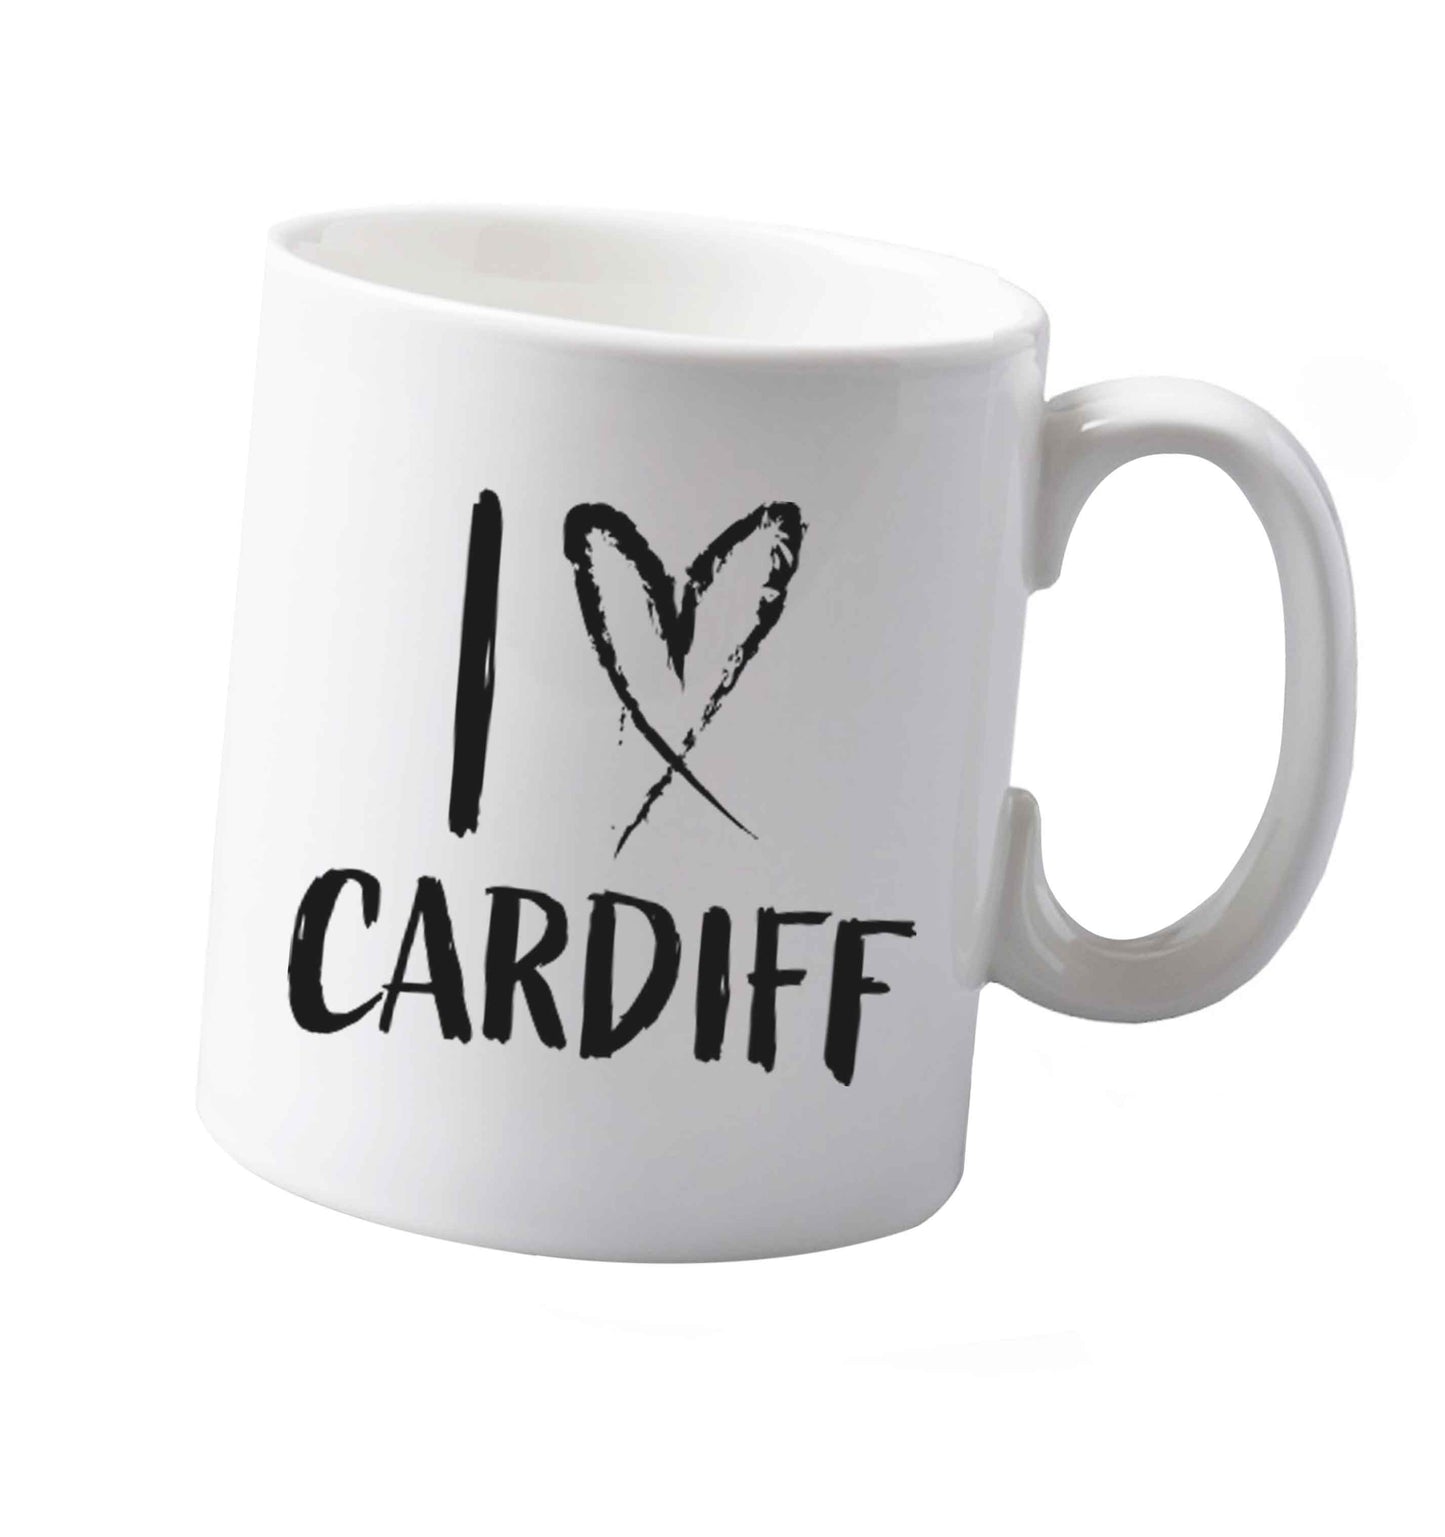 10 oz I love Cardiff ceramic mug both sides